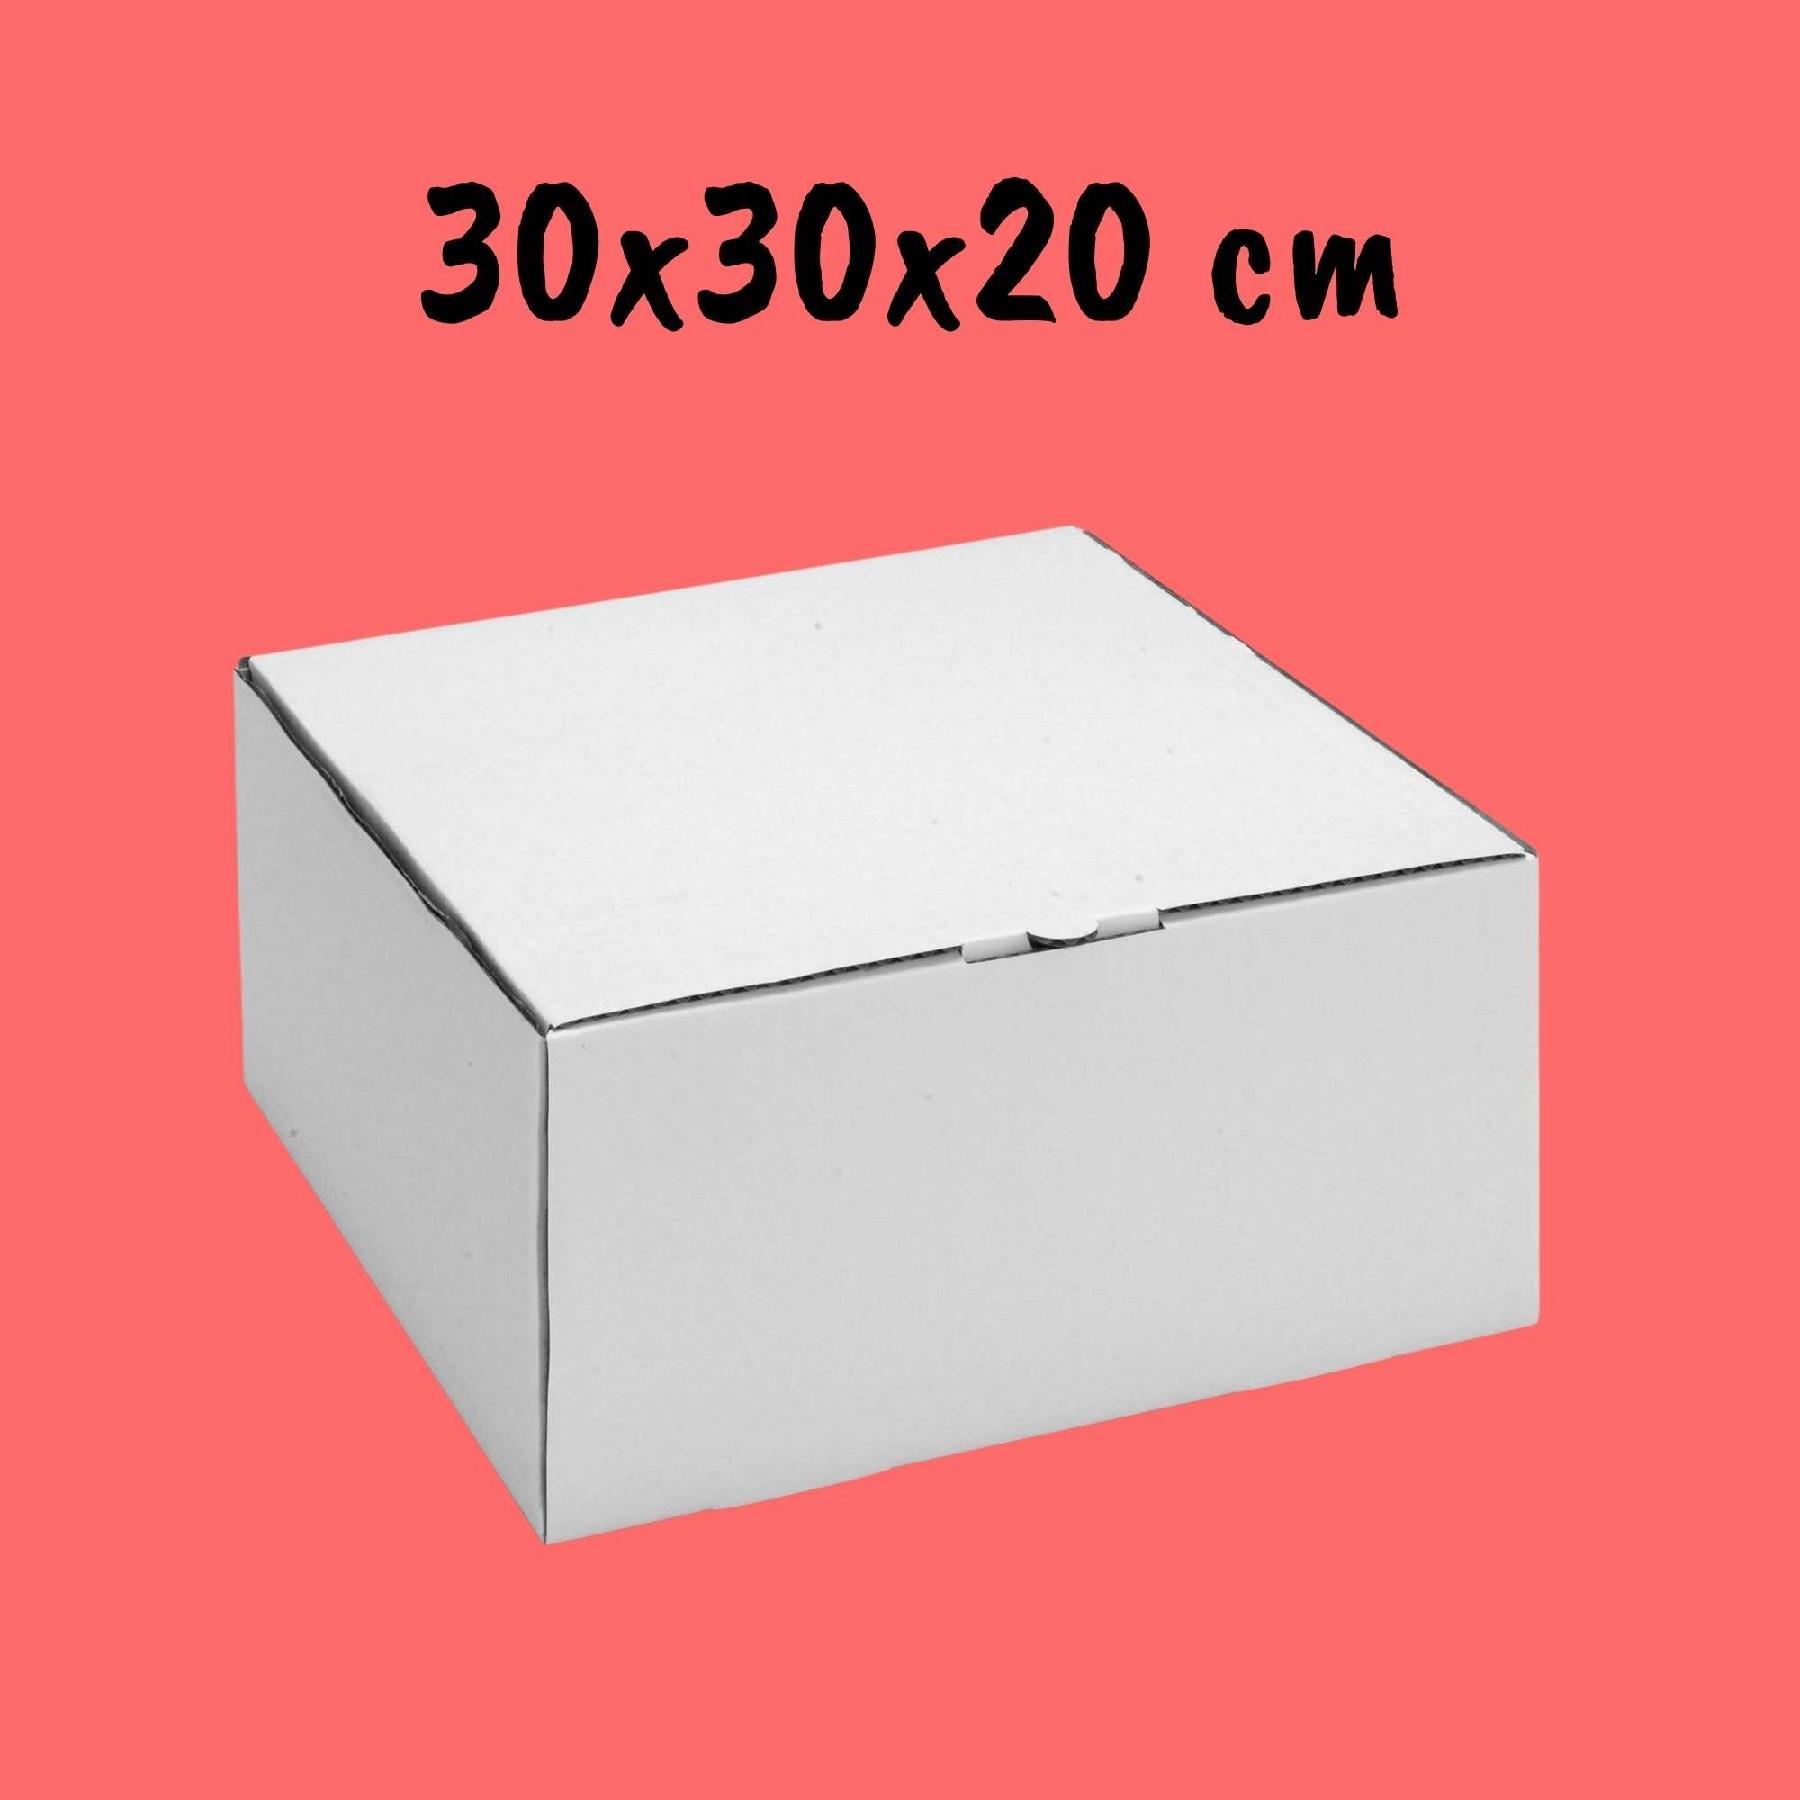 Caixa Para Bolo 30x30x20cm - Pacote com 10 unidades